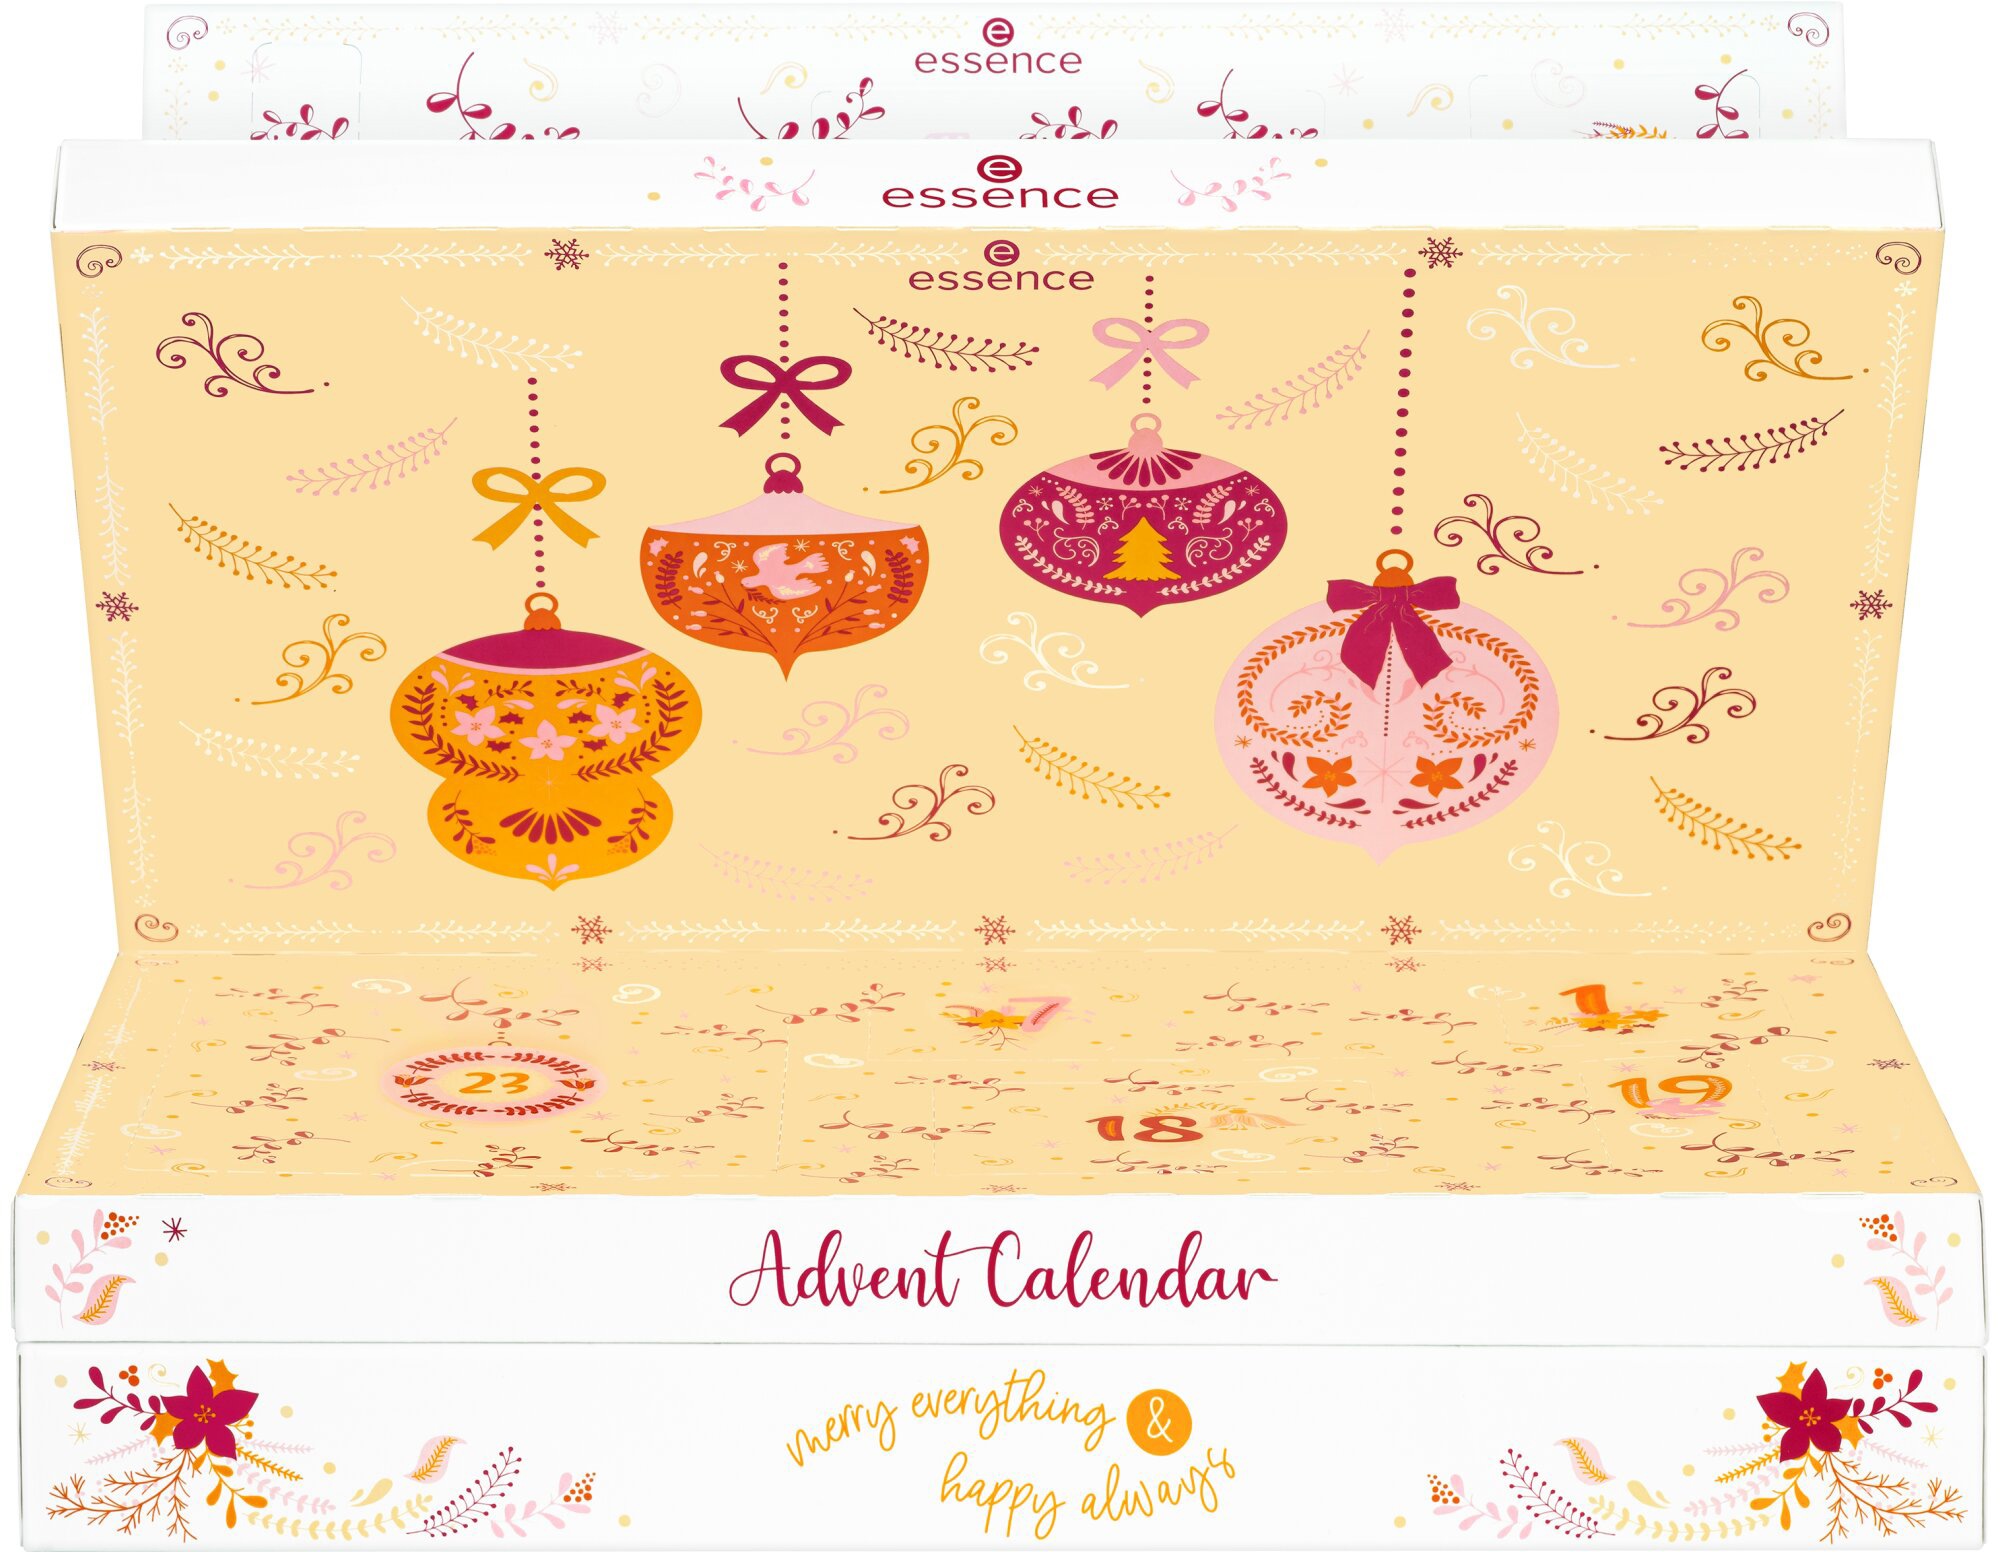 ab always«, & online everything Calendar Adventskalender Jahren happy merry »Advent 14 Essence bei